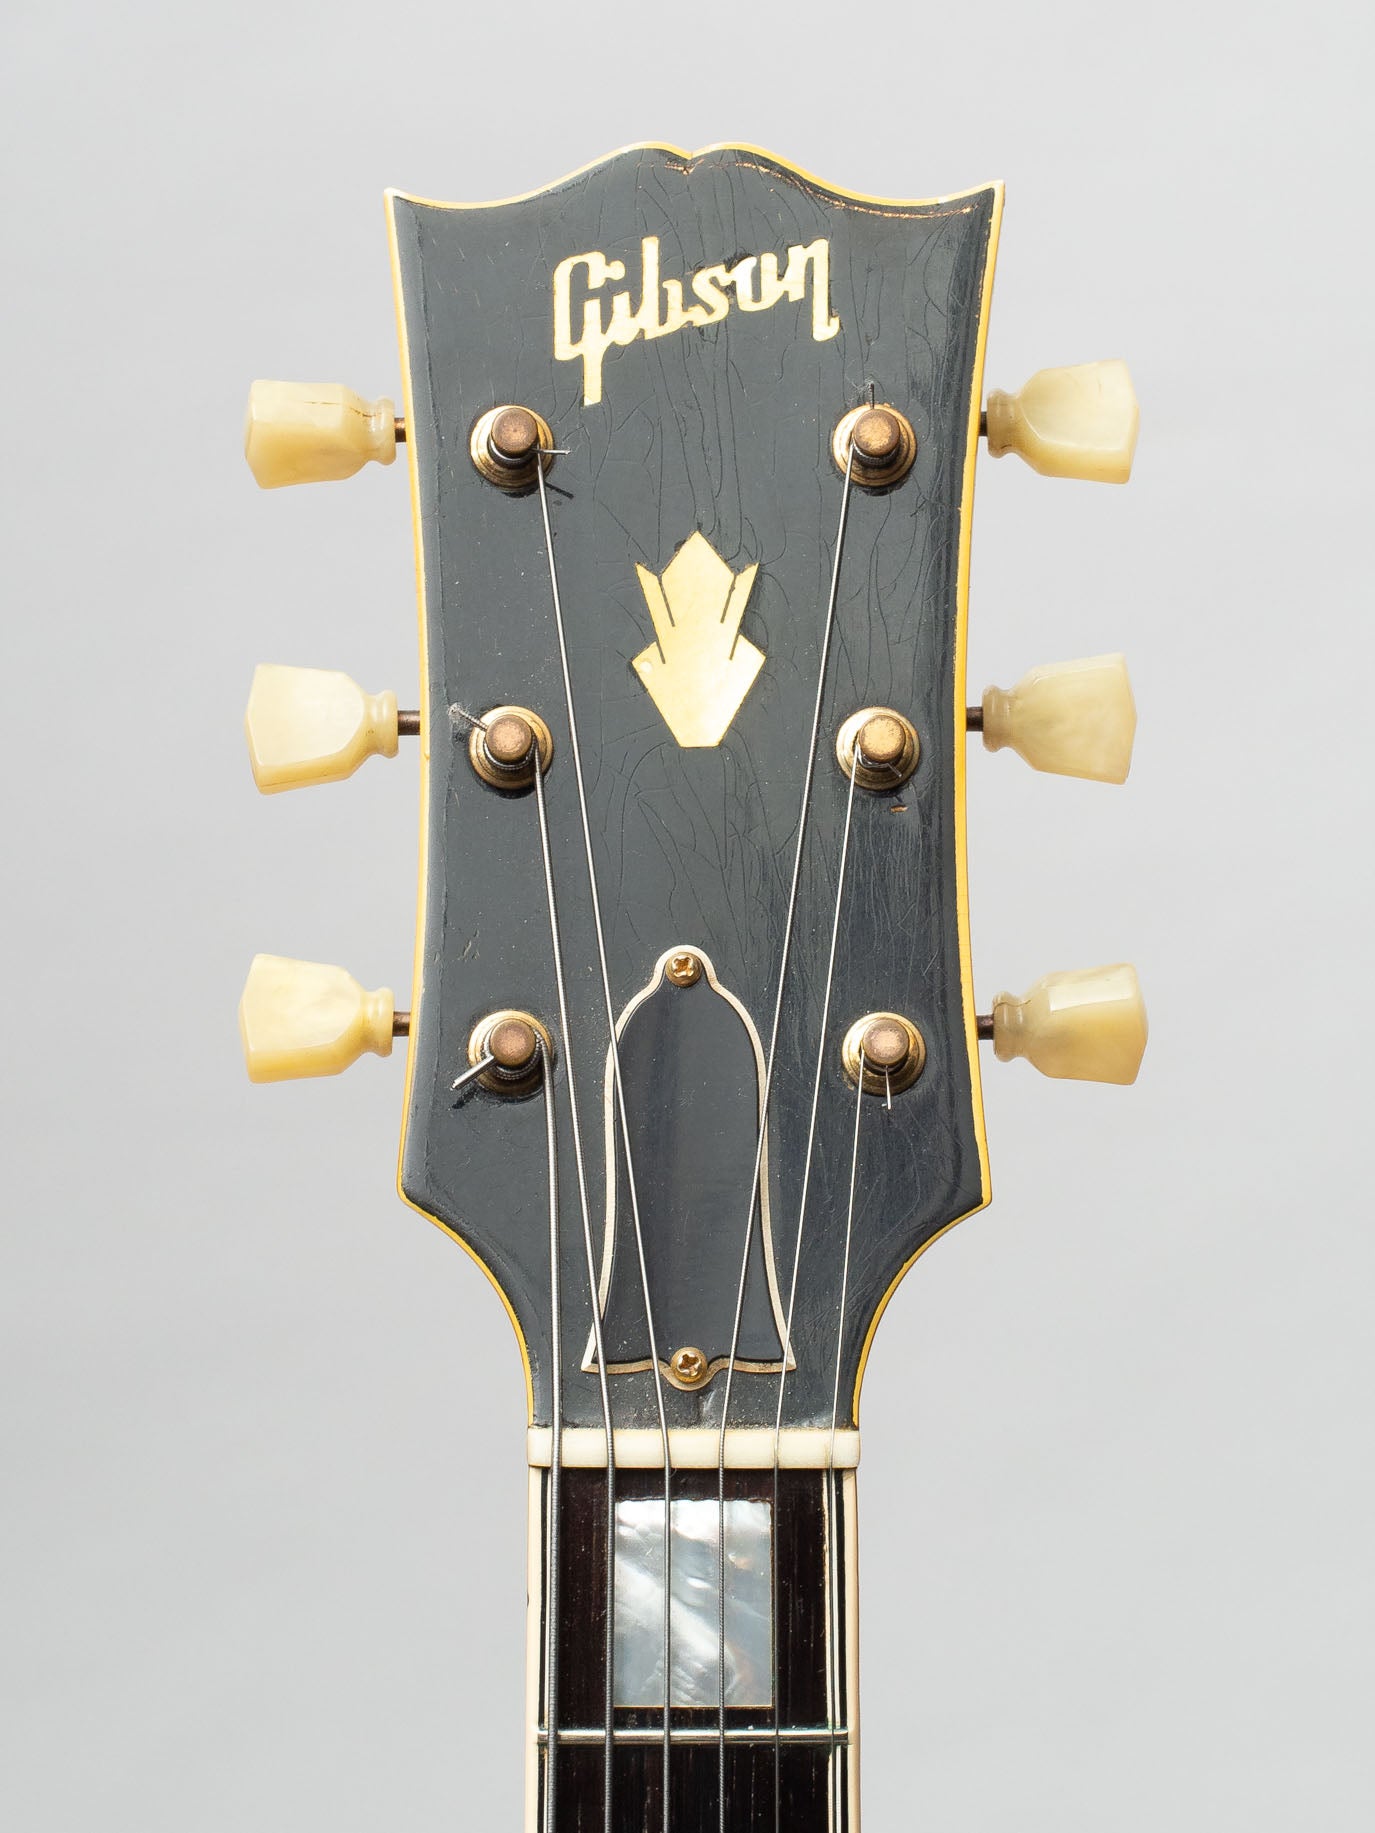 1952 Gibson ES-5